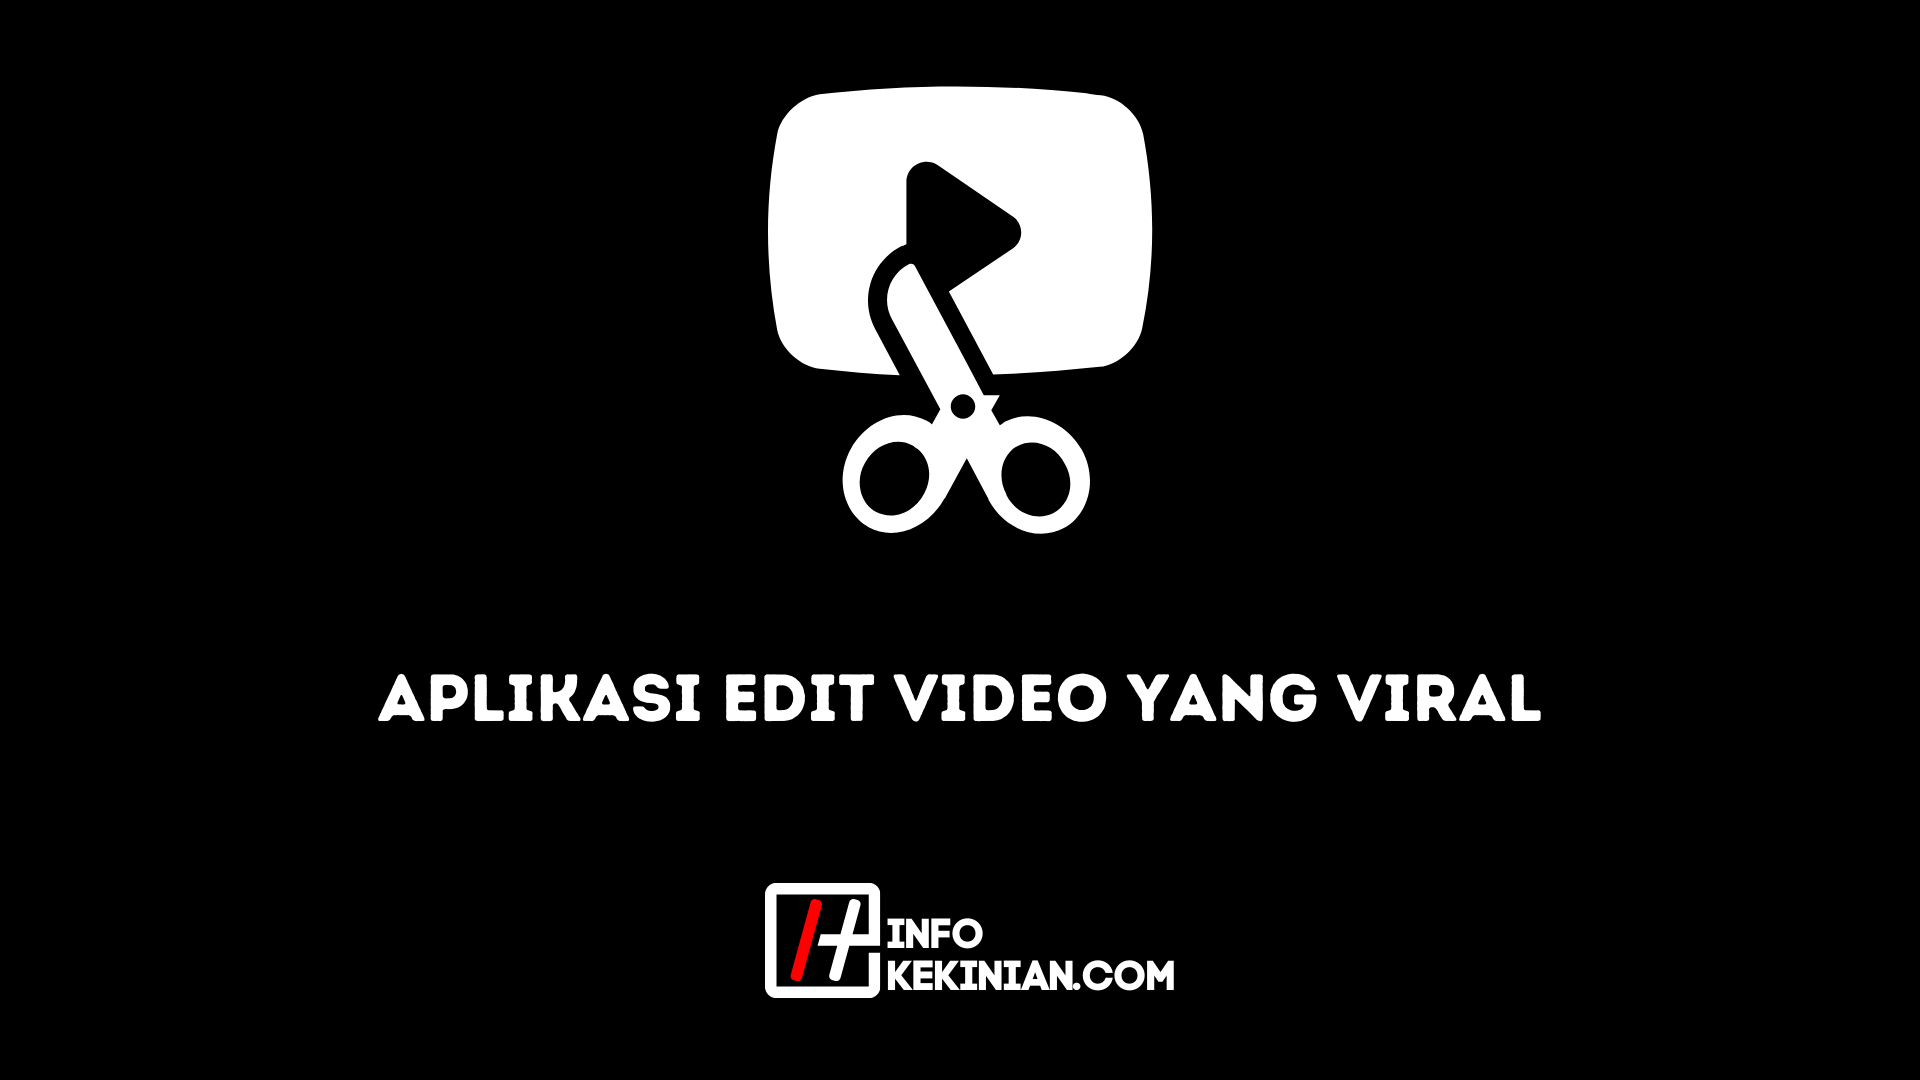 Viral Video Editing Application